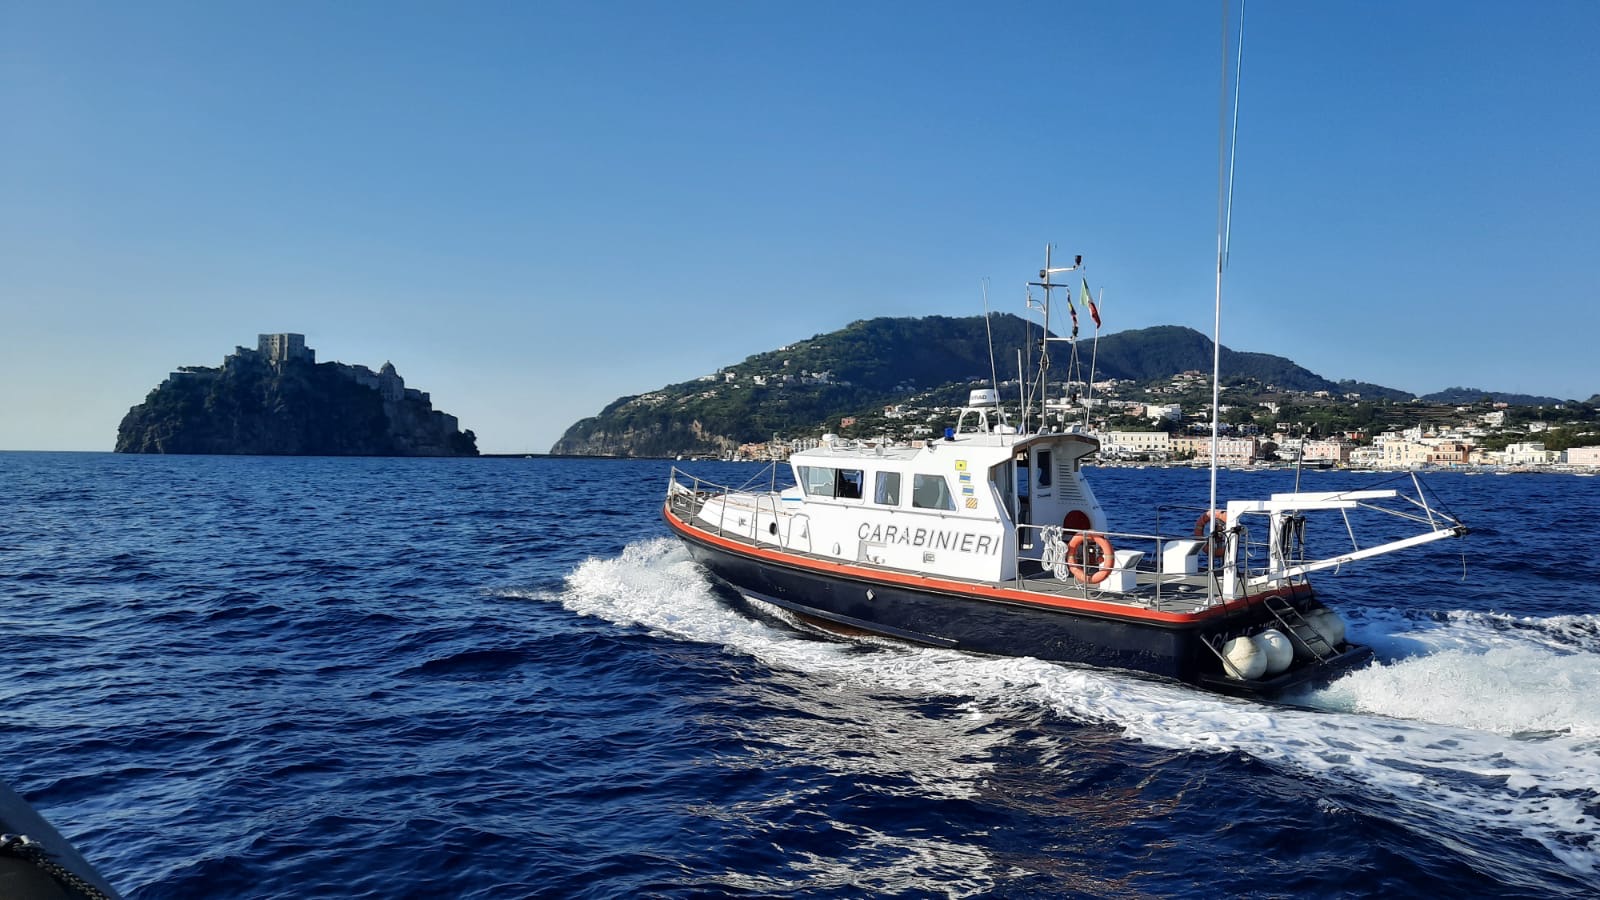 Controlli dei carabinieri nel golfo di Napoli a Ferragosto: oltre 1300 militari impiegati